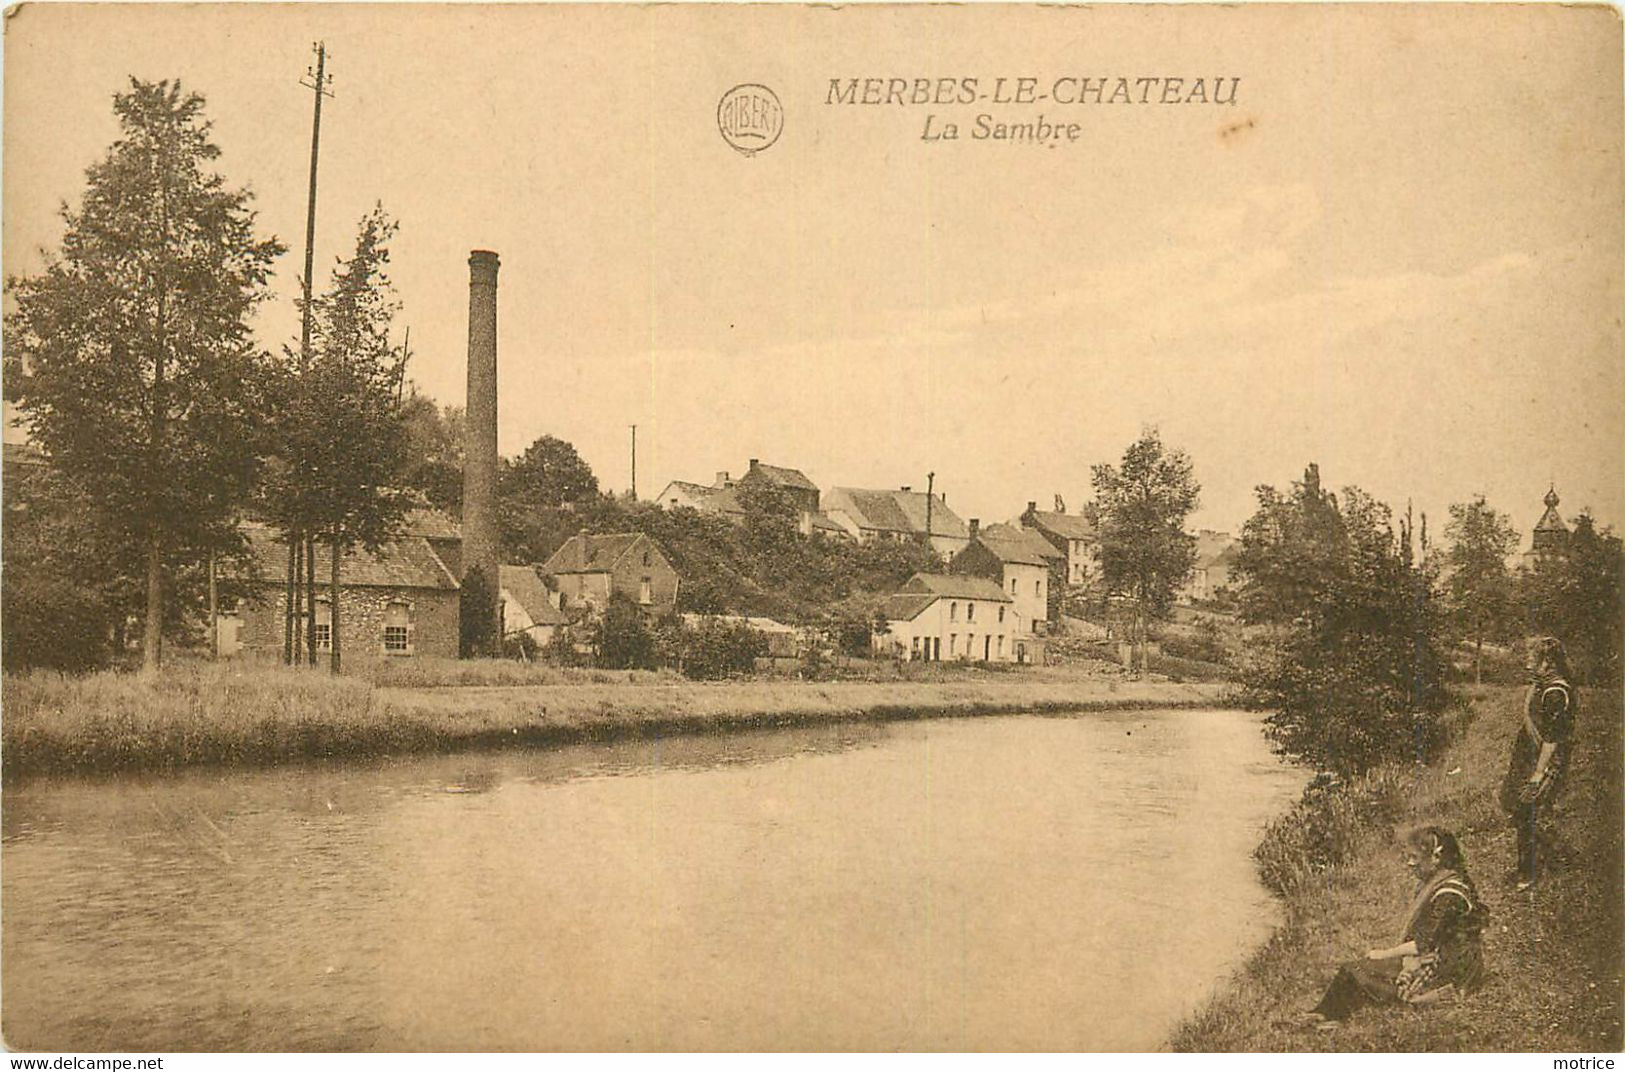 MERBES LE CHATEAU - La Sambre. - Merbes-le-Château